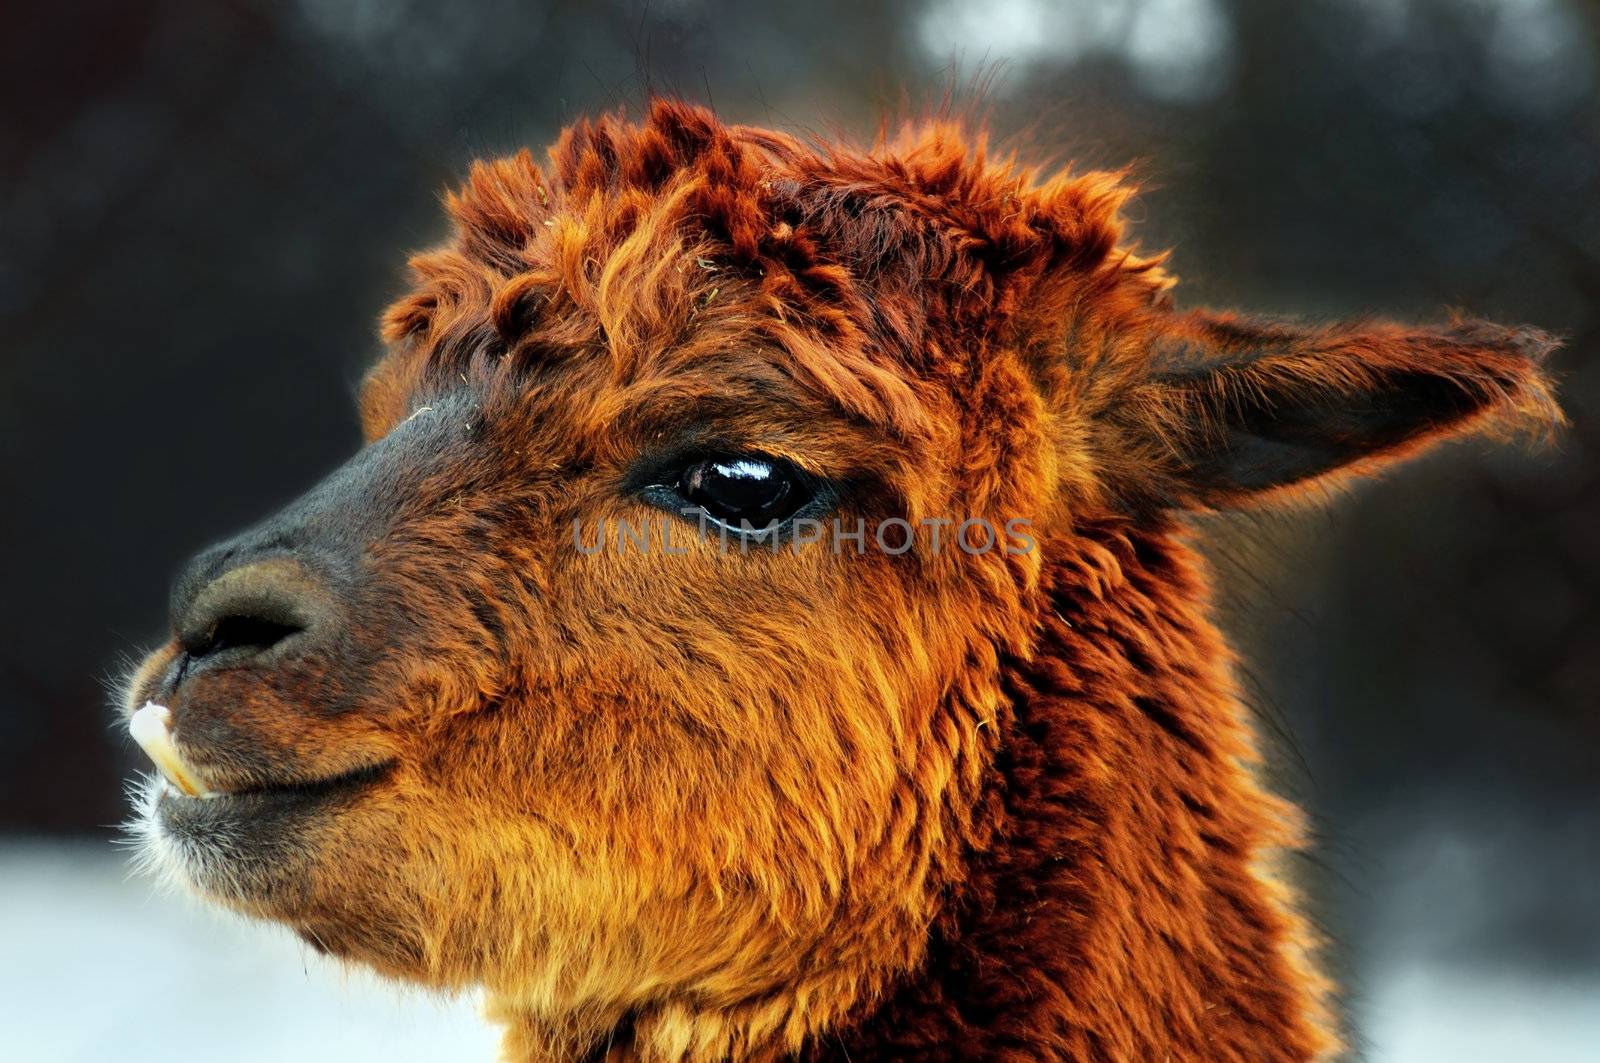 Brown alpaca portrait by Mirage3